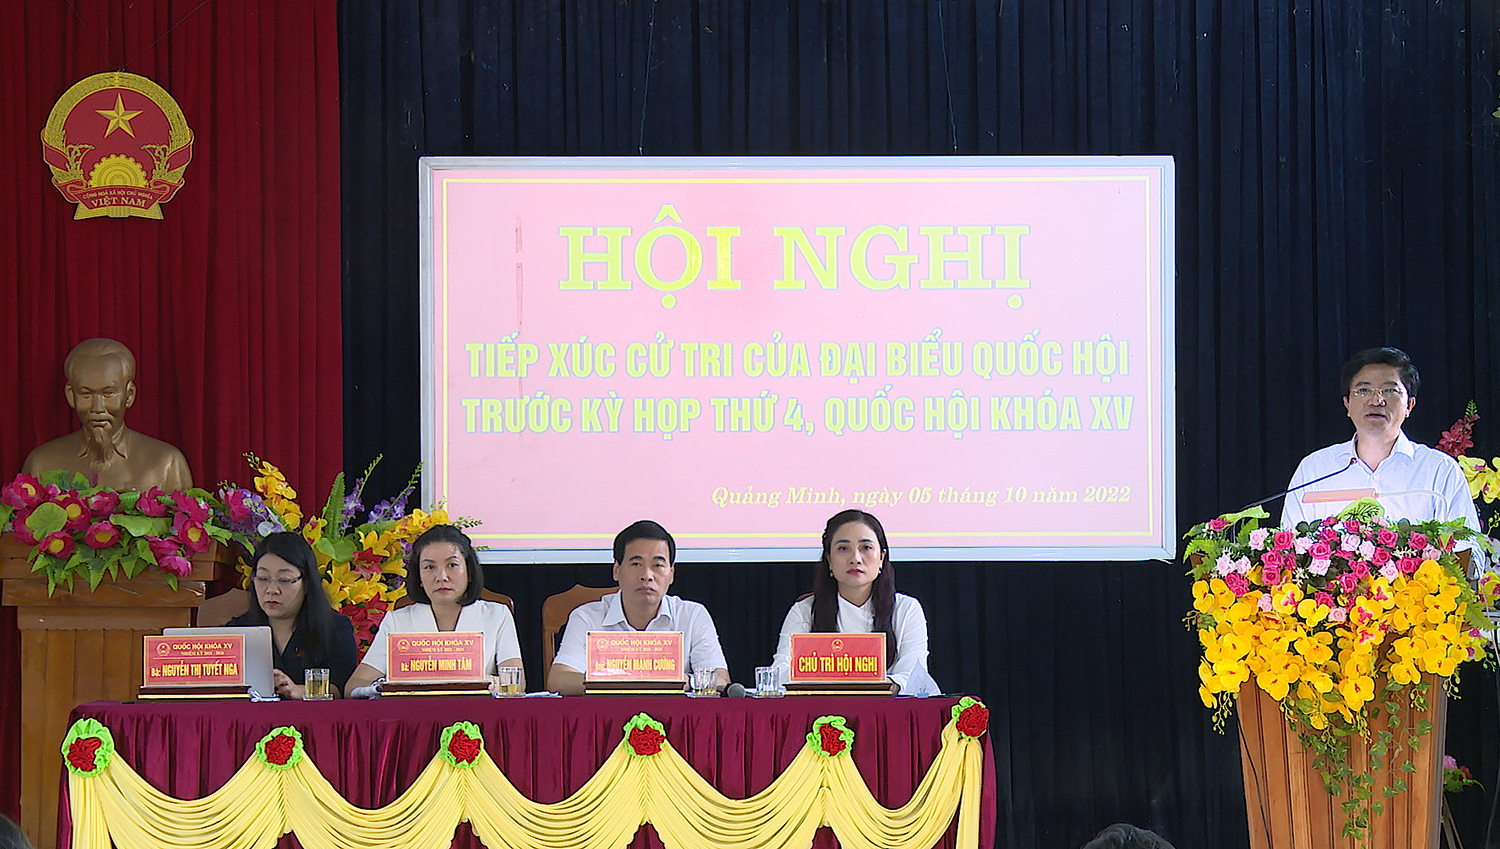 Đồng chí Bí thư Thị ủy Ba Đồn ông Trương An Ninh đại diện lãnh đạo thị xã Ba Đồn trực tiếp giải đáp các ý kiến